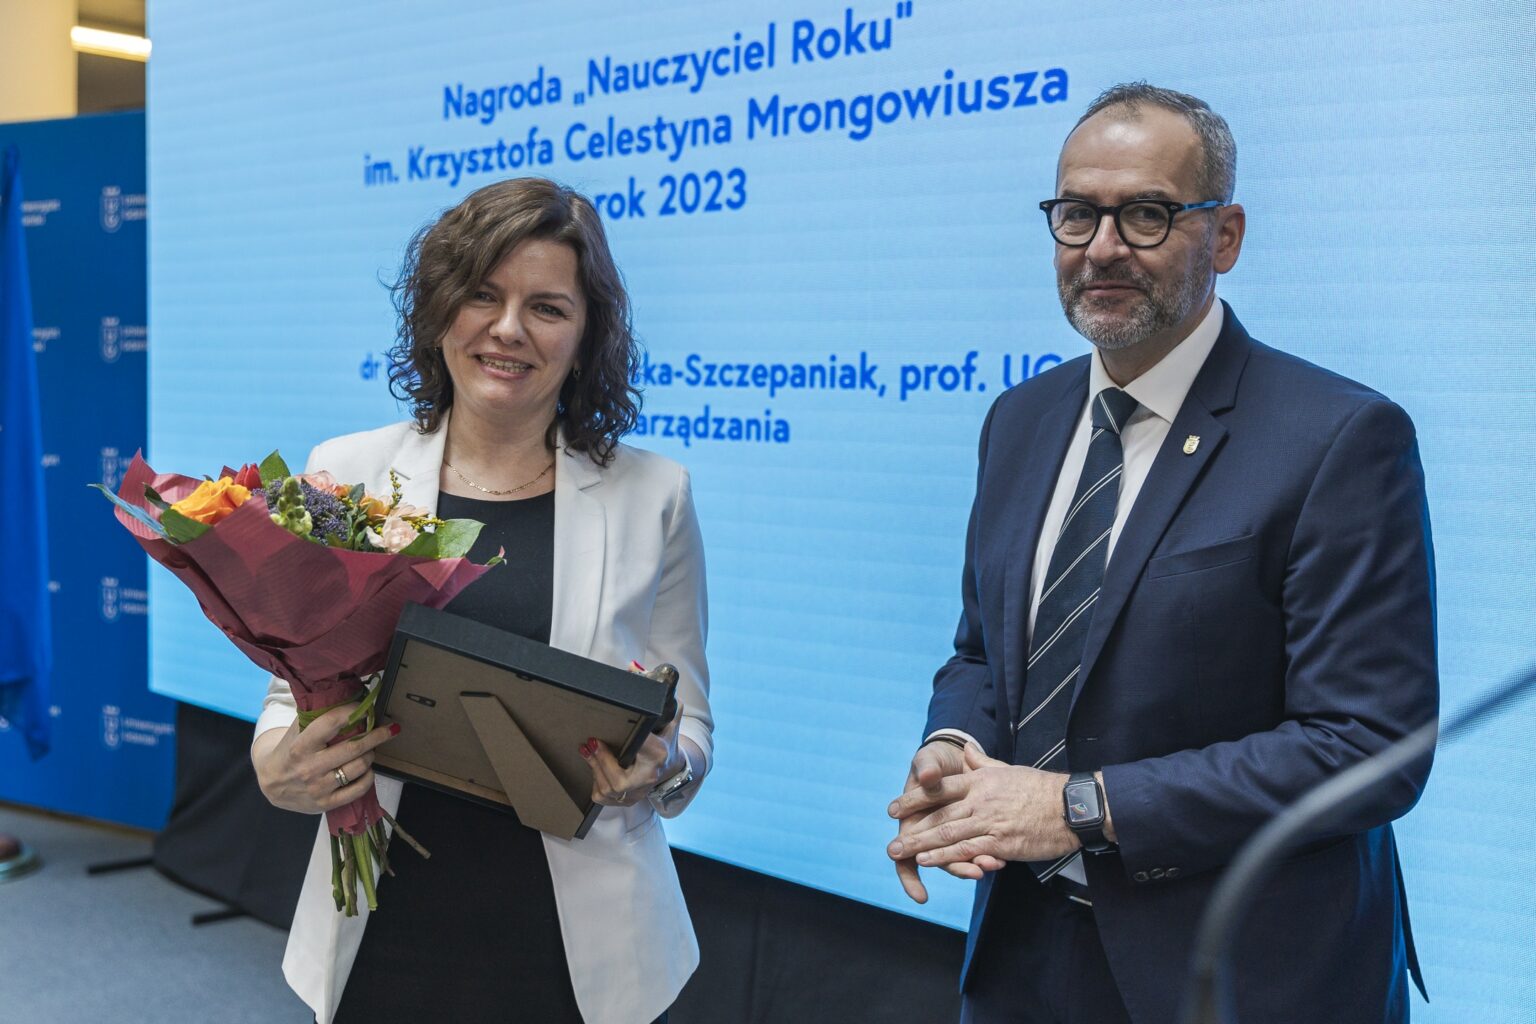 Wręczenie nagród „Nauczyciel Roku” im. Krzysztofa Celestyna Mrongowiusza
(Fot. Alan Stocki/UG).